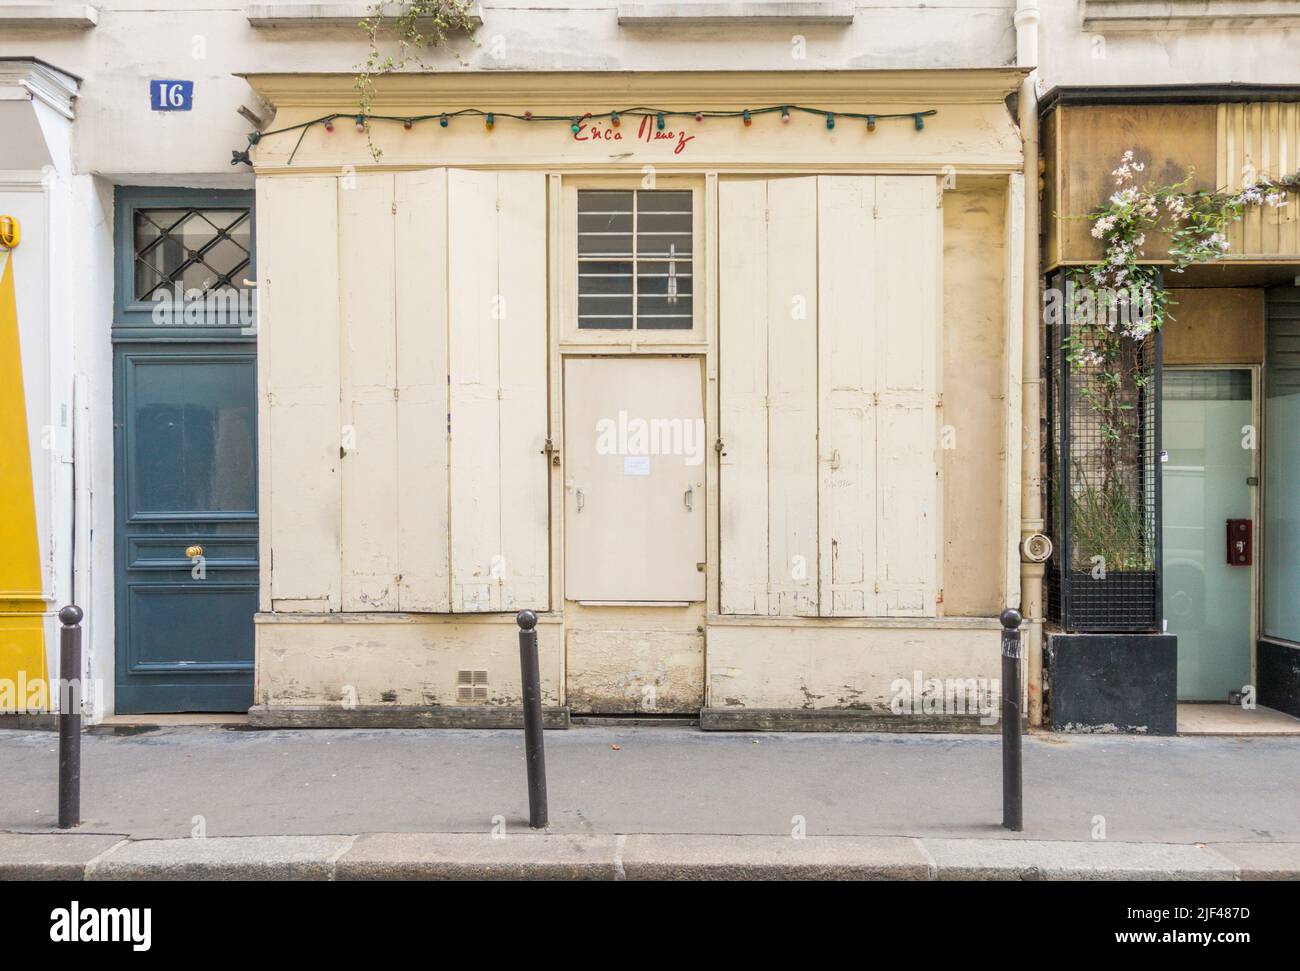 Façade d'une vieille boutique parisienne fermée. Paris, France. Banque D'Images